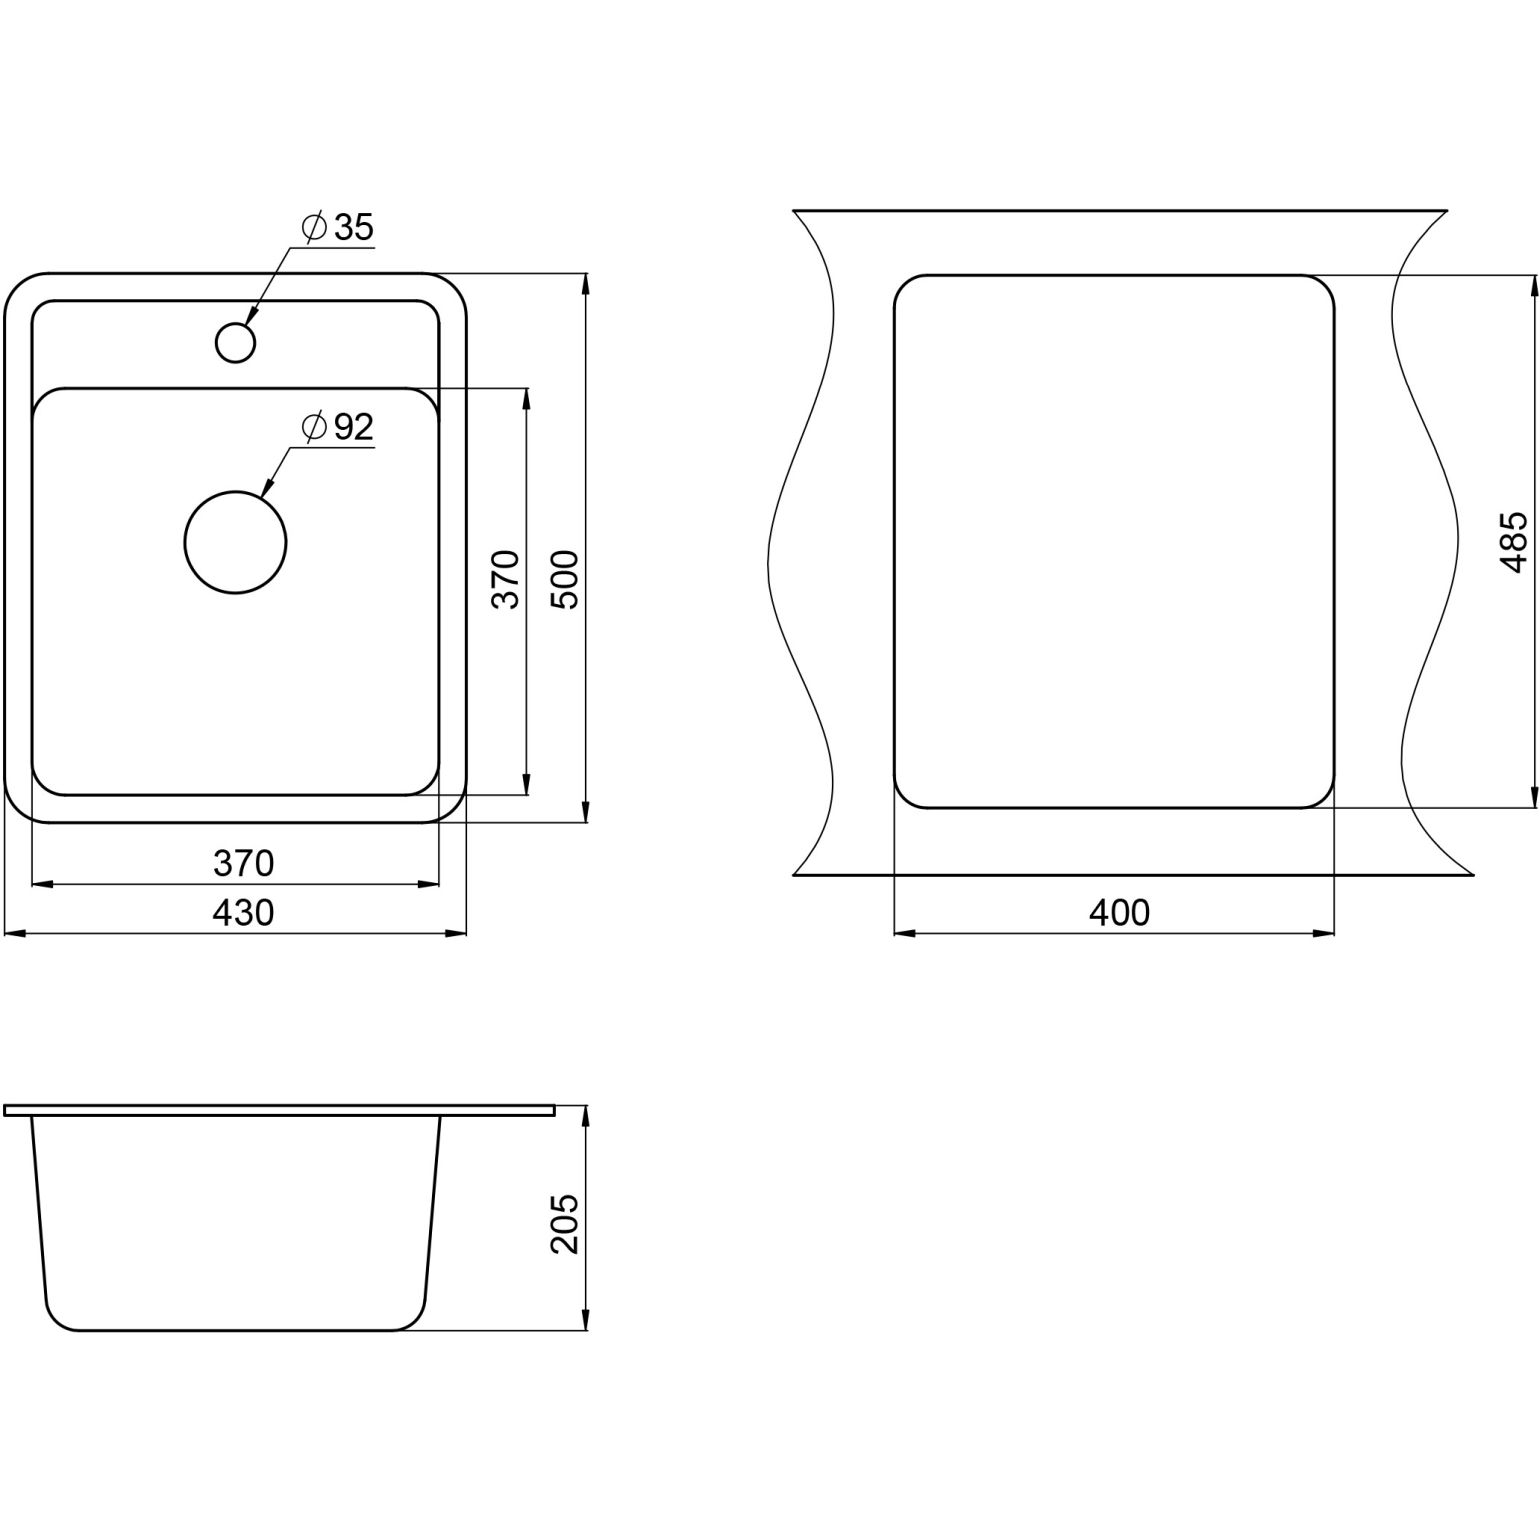 Кухонная мойка кварцевая Granula Standart ST-4202 односекционная квадратная, стандарт, чаша 370x370, цвет белый (4202wh)